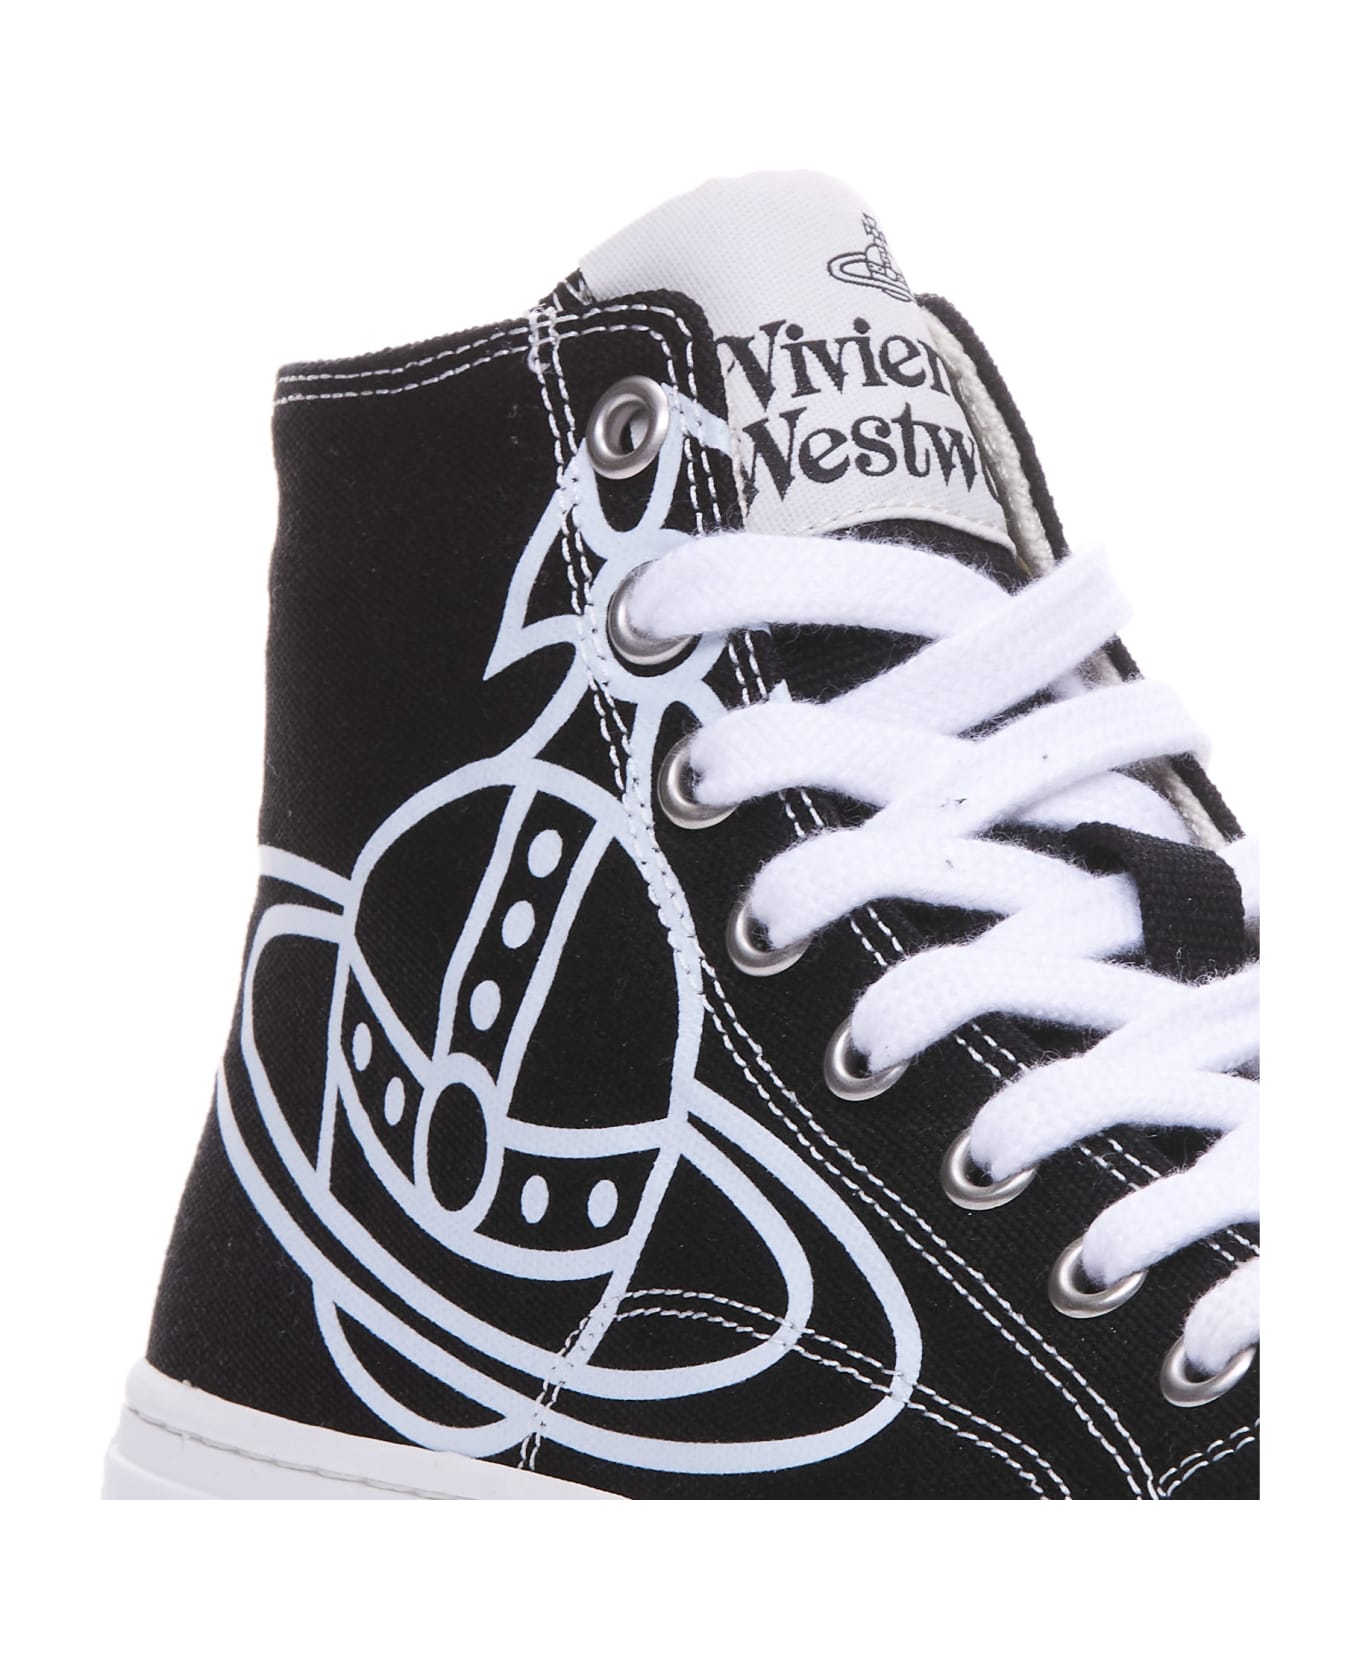 Vivienne Westwood Plimsoll High Sneakers - Black